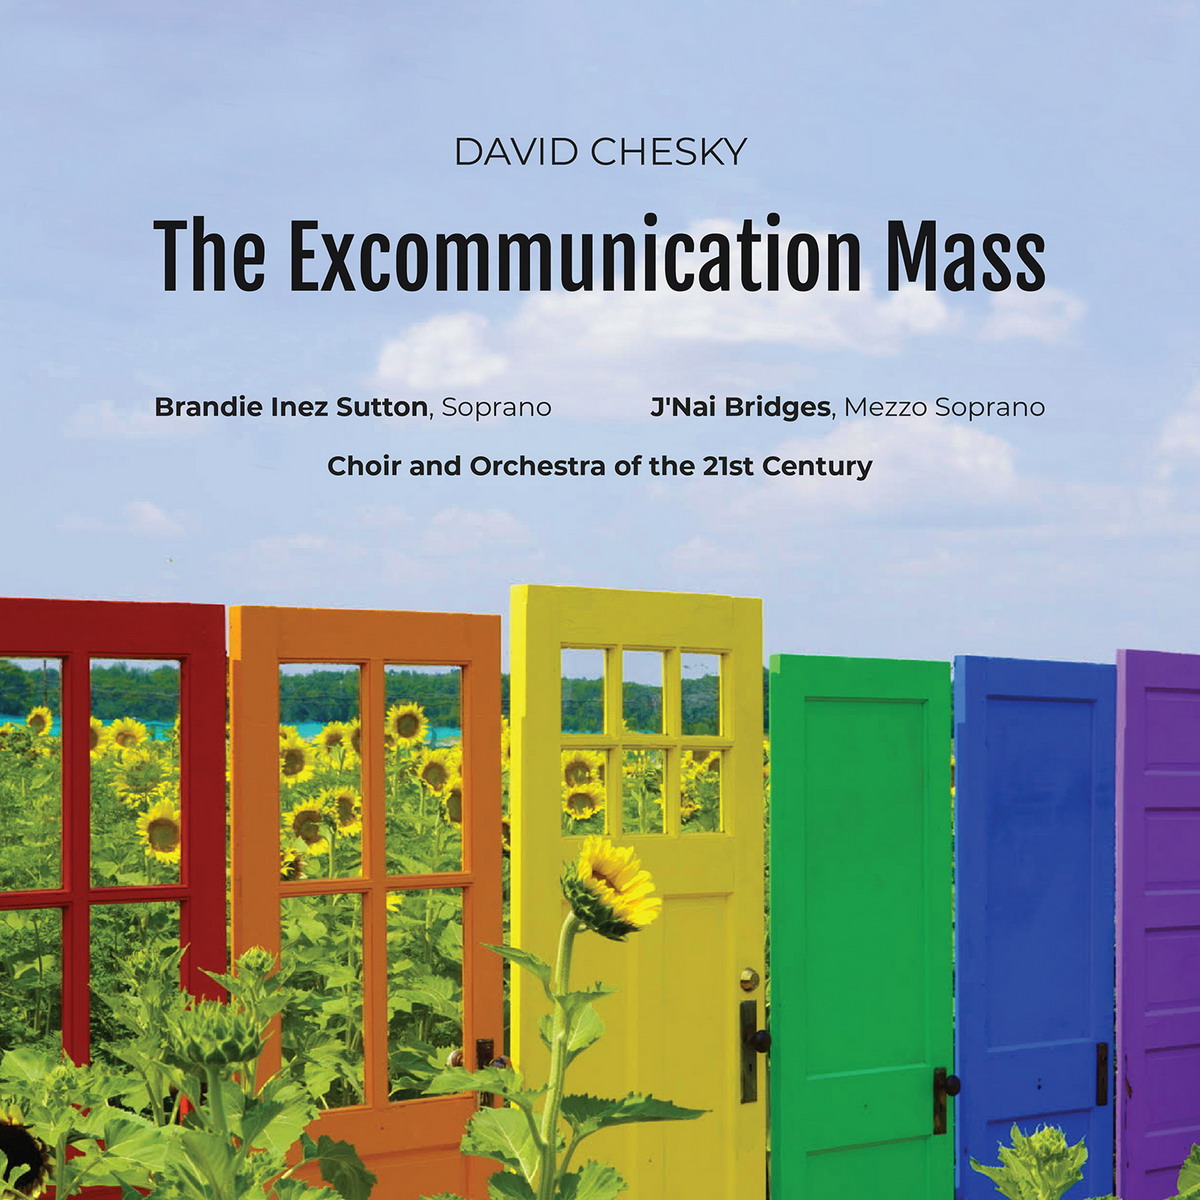 DAVID CHESKY „The Excommunication Mass”. Nowa płyta z J’Nai Bridges oraz Brandie Inez Sutton 29 kwietnia